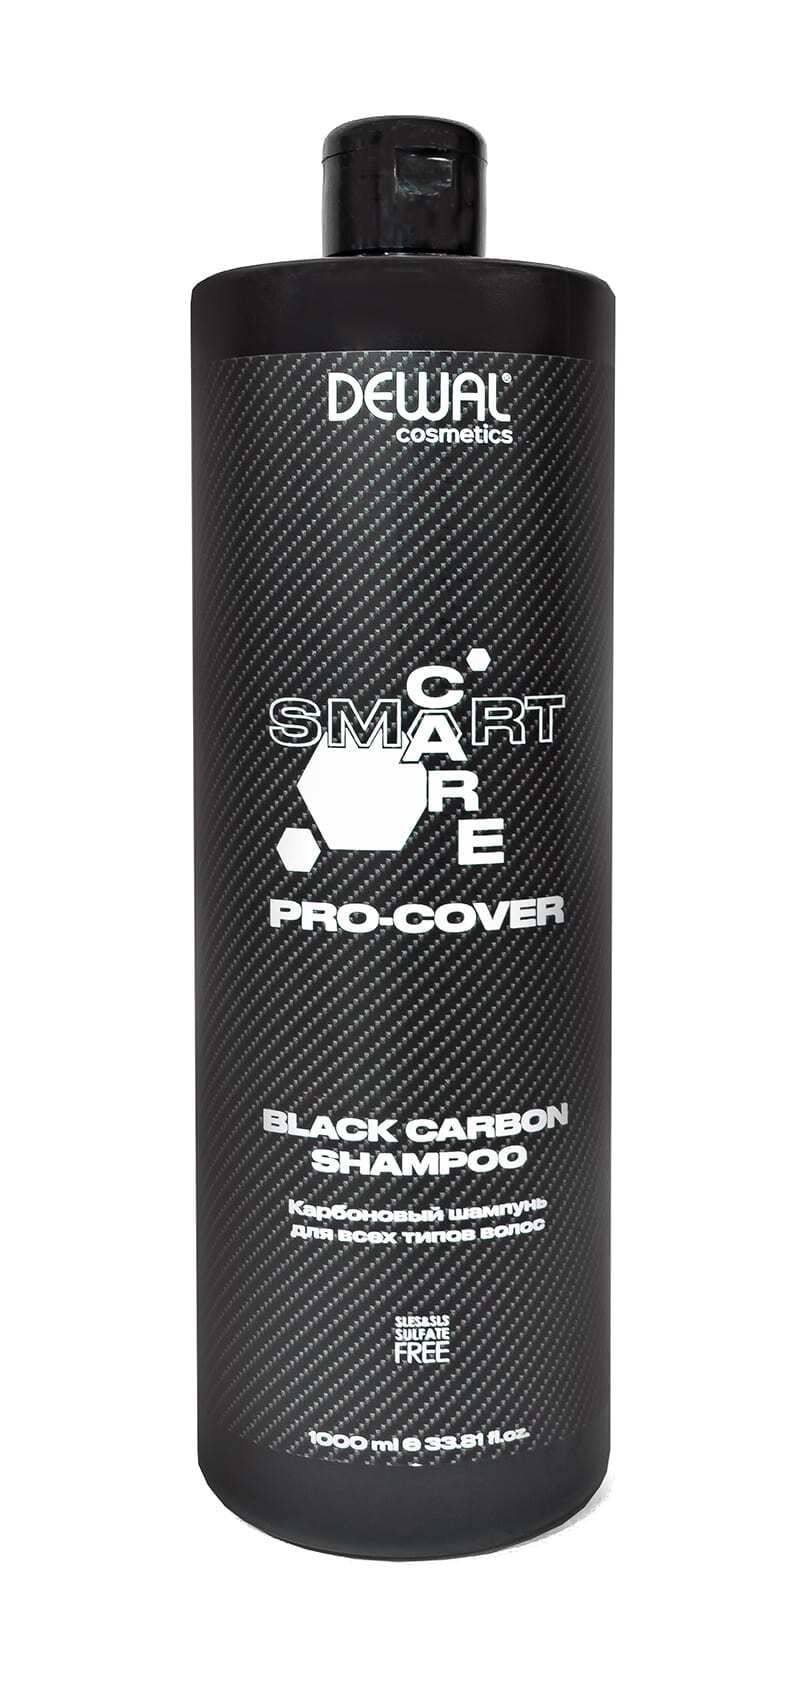 Карбоновый шампунь для всех типов волос SMART CARE PRO-COVER Black Carbon Shampoo, 1000 мл DEWAL Cosmetics DCP20502 - 1